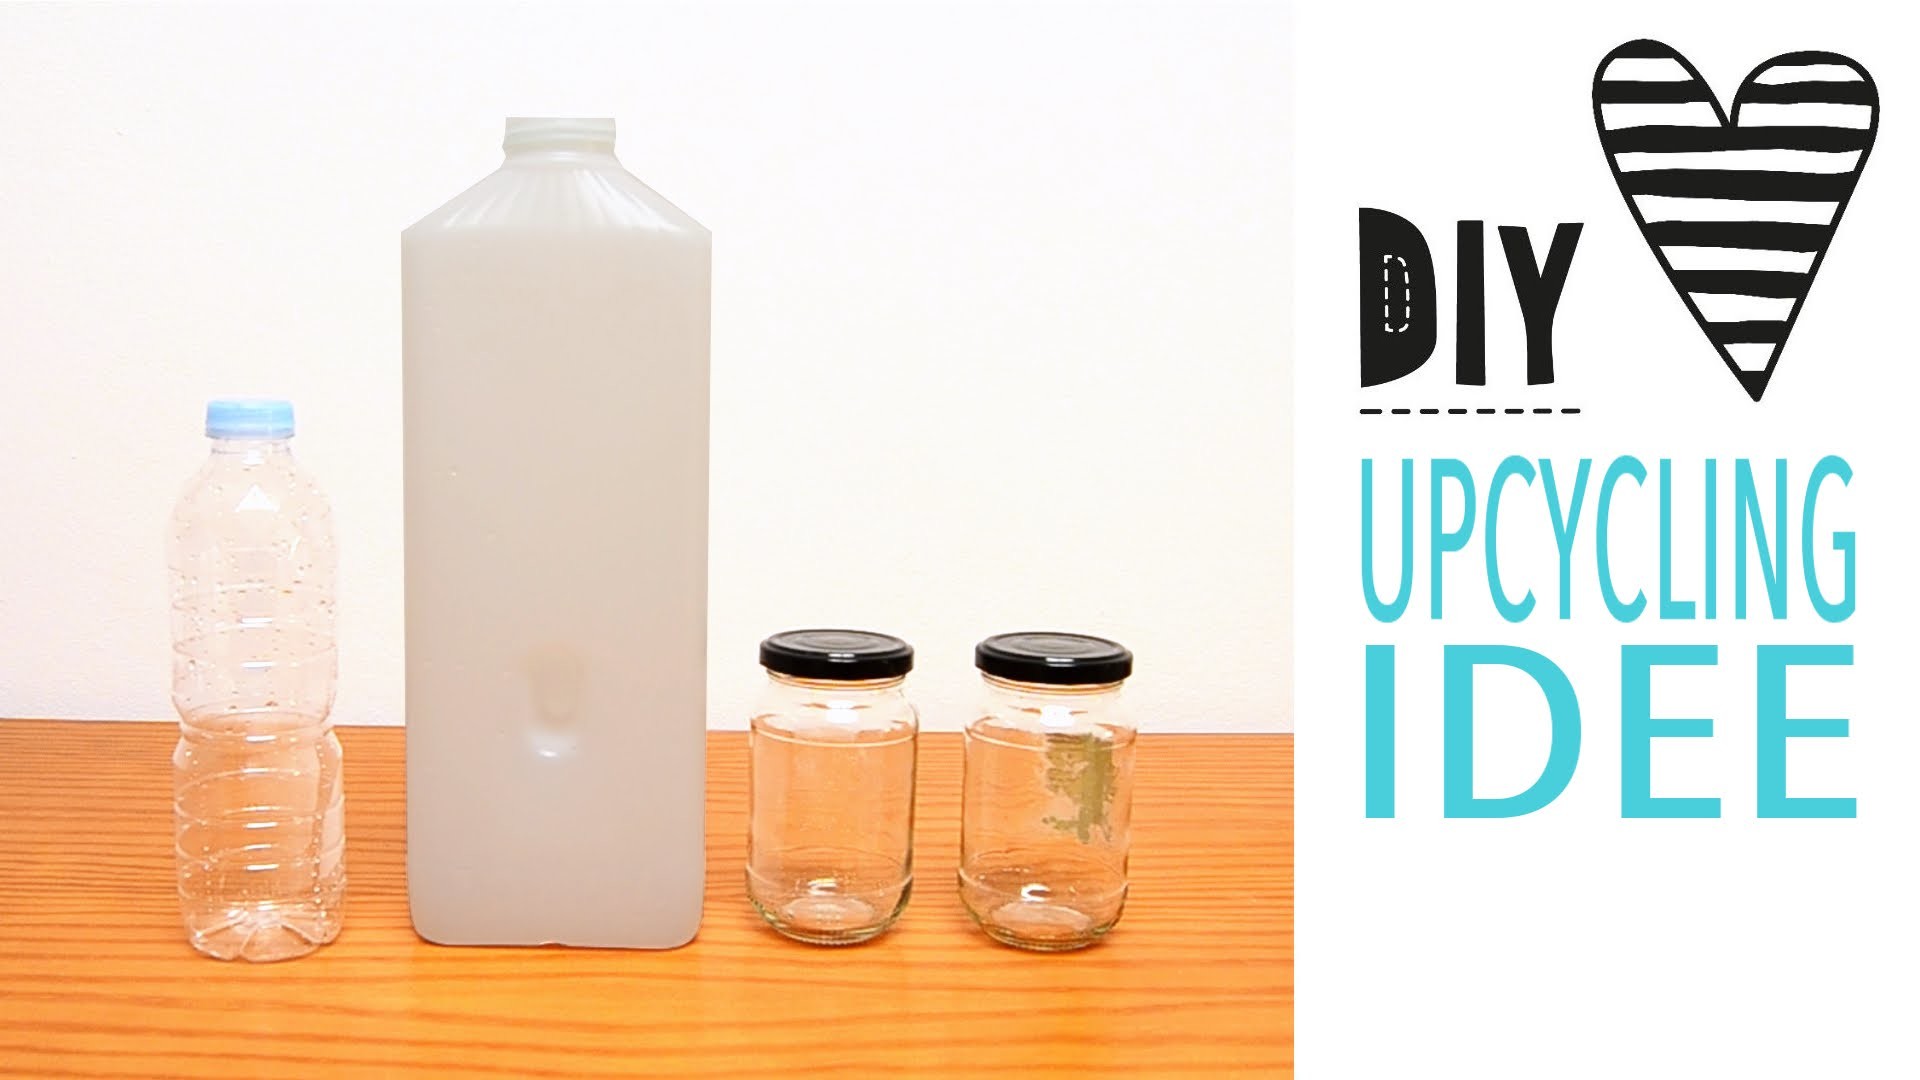 DIY Upcycling Idee. Nähen für Gläser und Flaschen